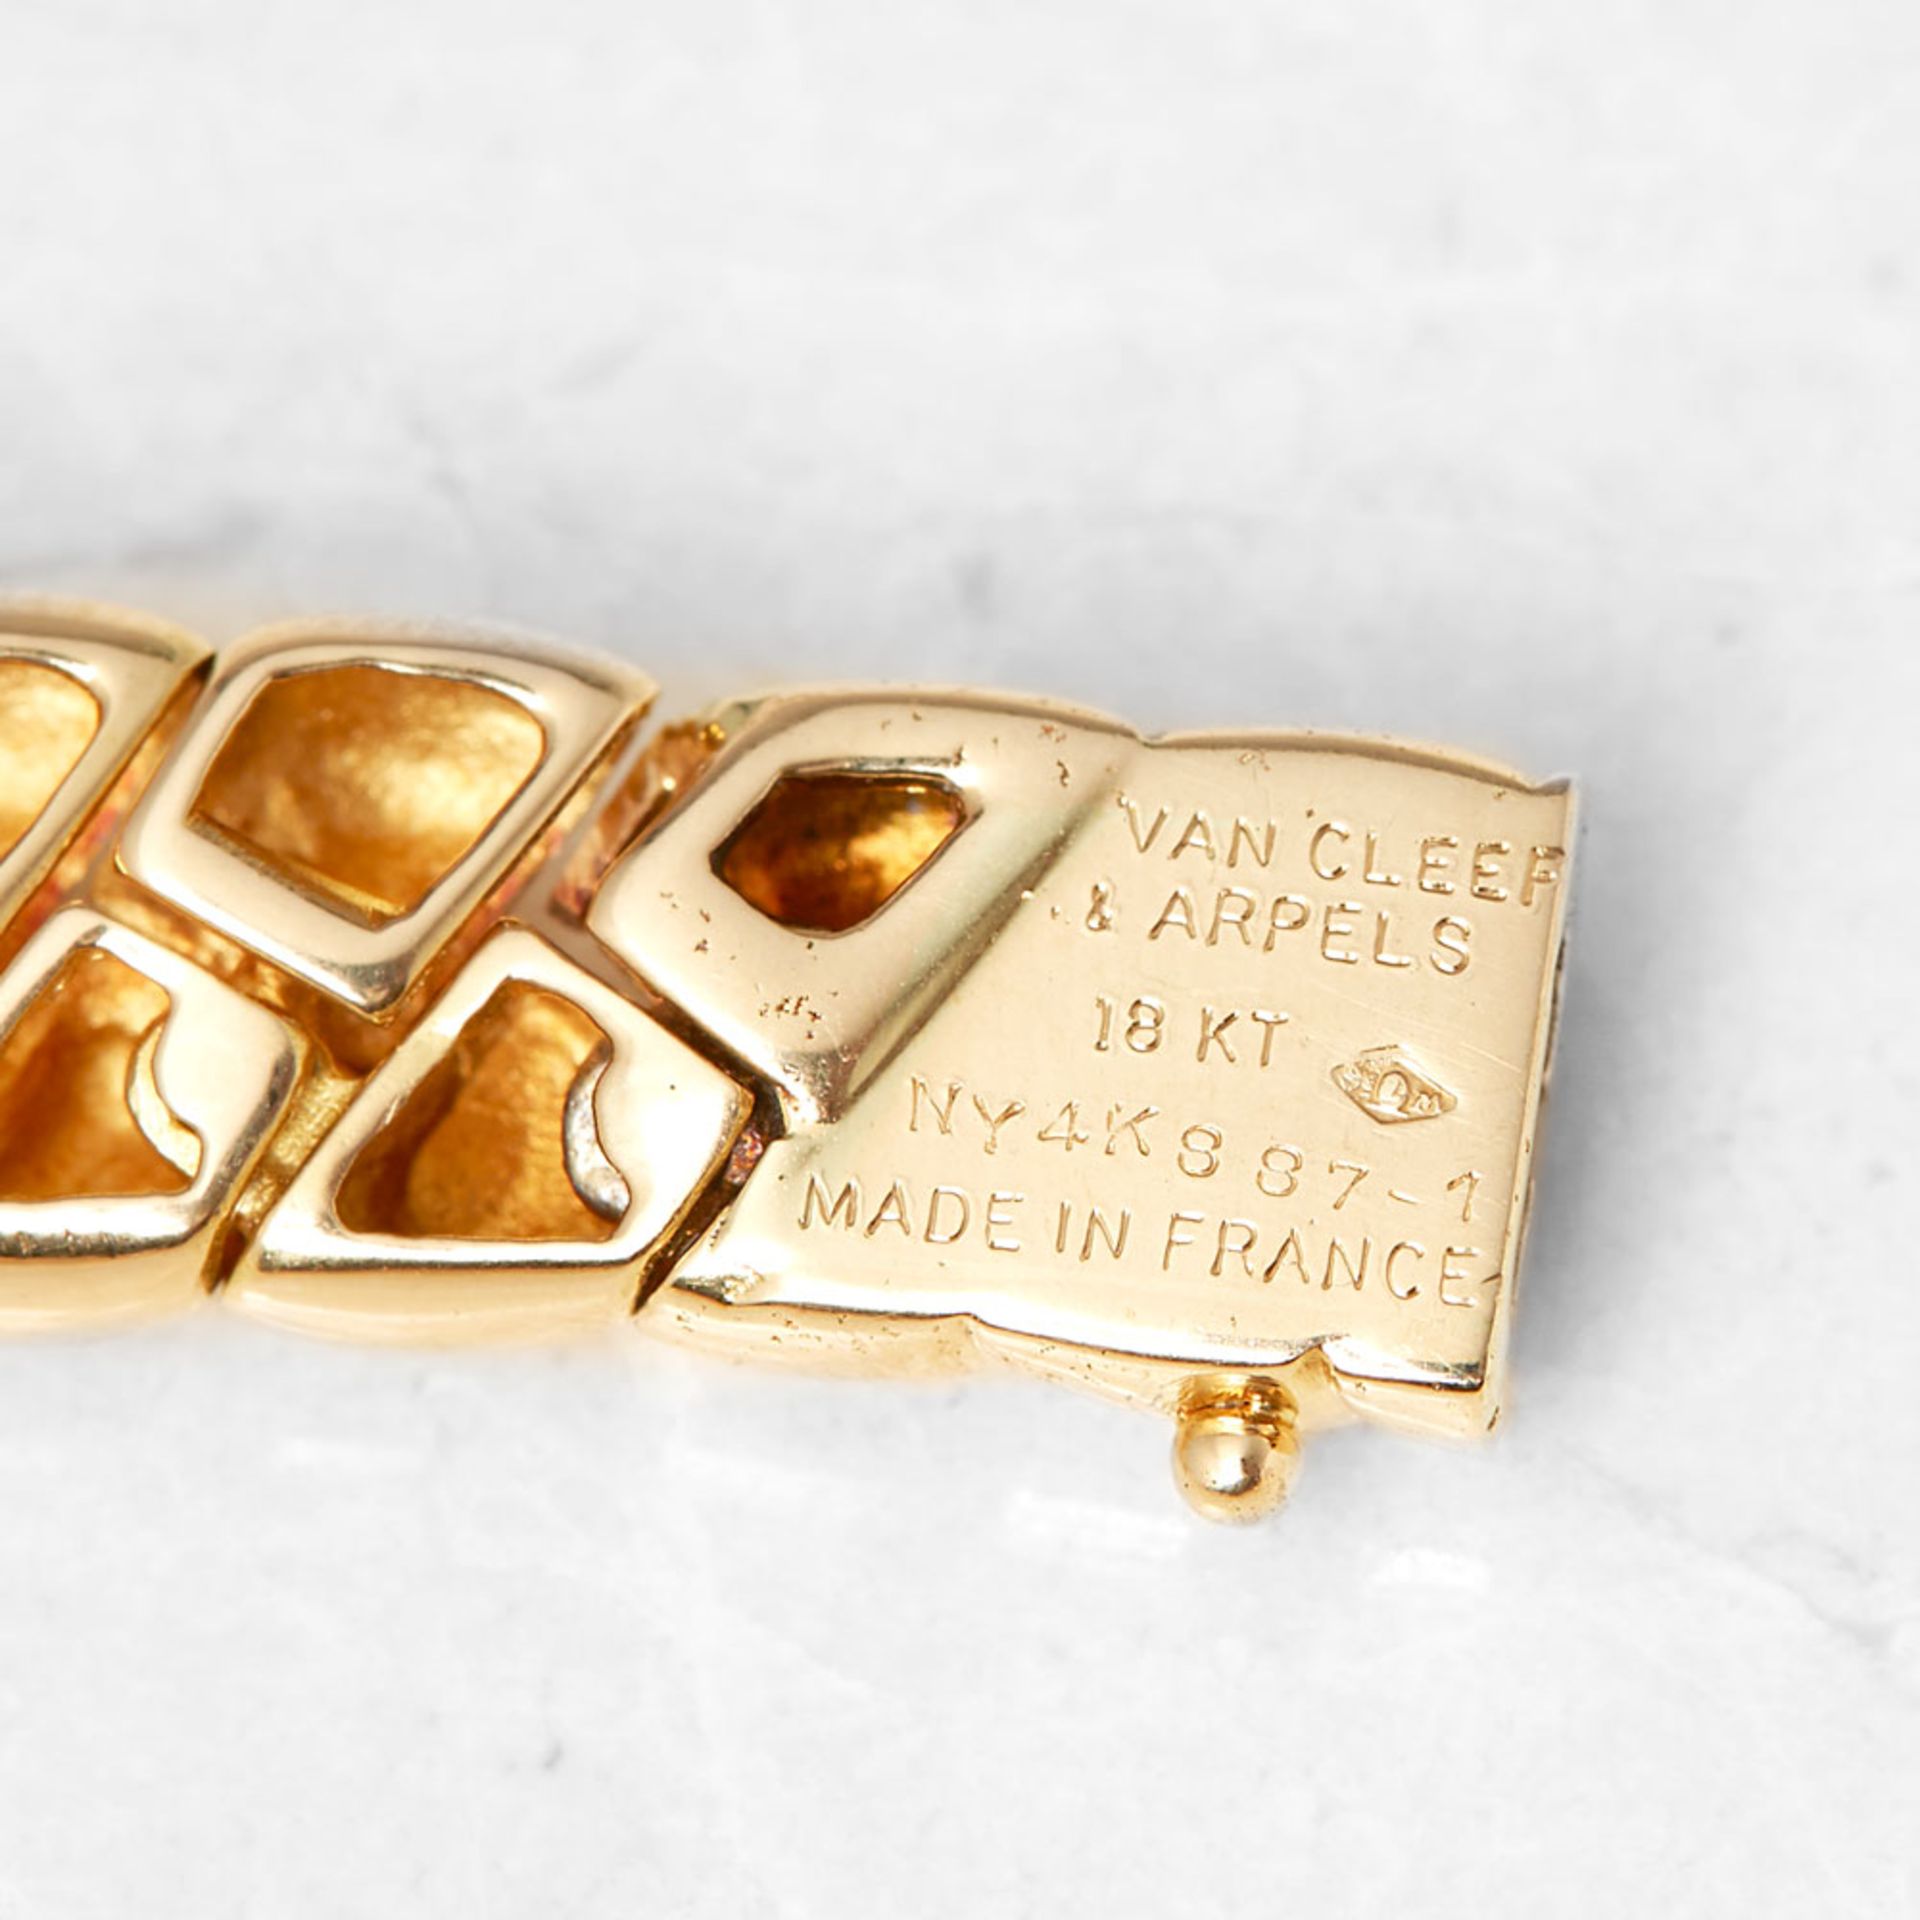 Van Cleef & Arpels 18k Yellow Gold Diamond Link Necklace - Image 5 of 5